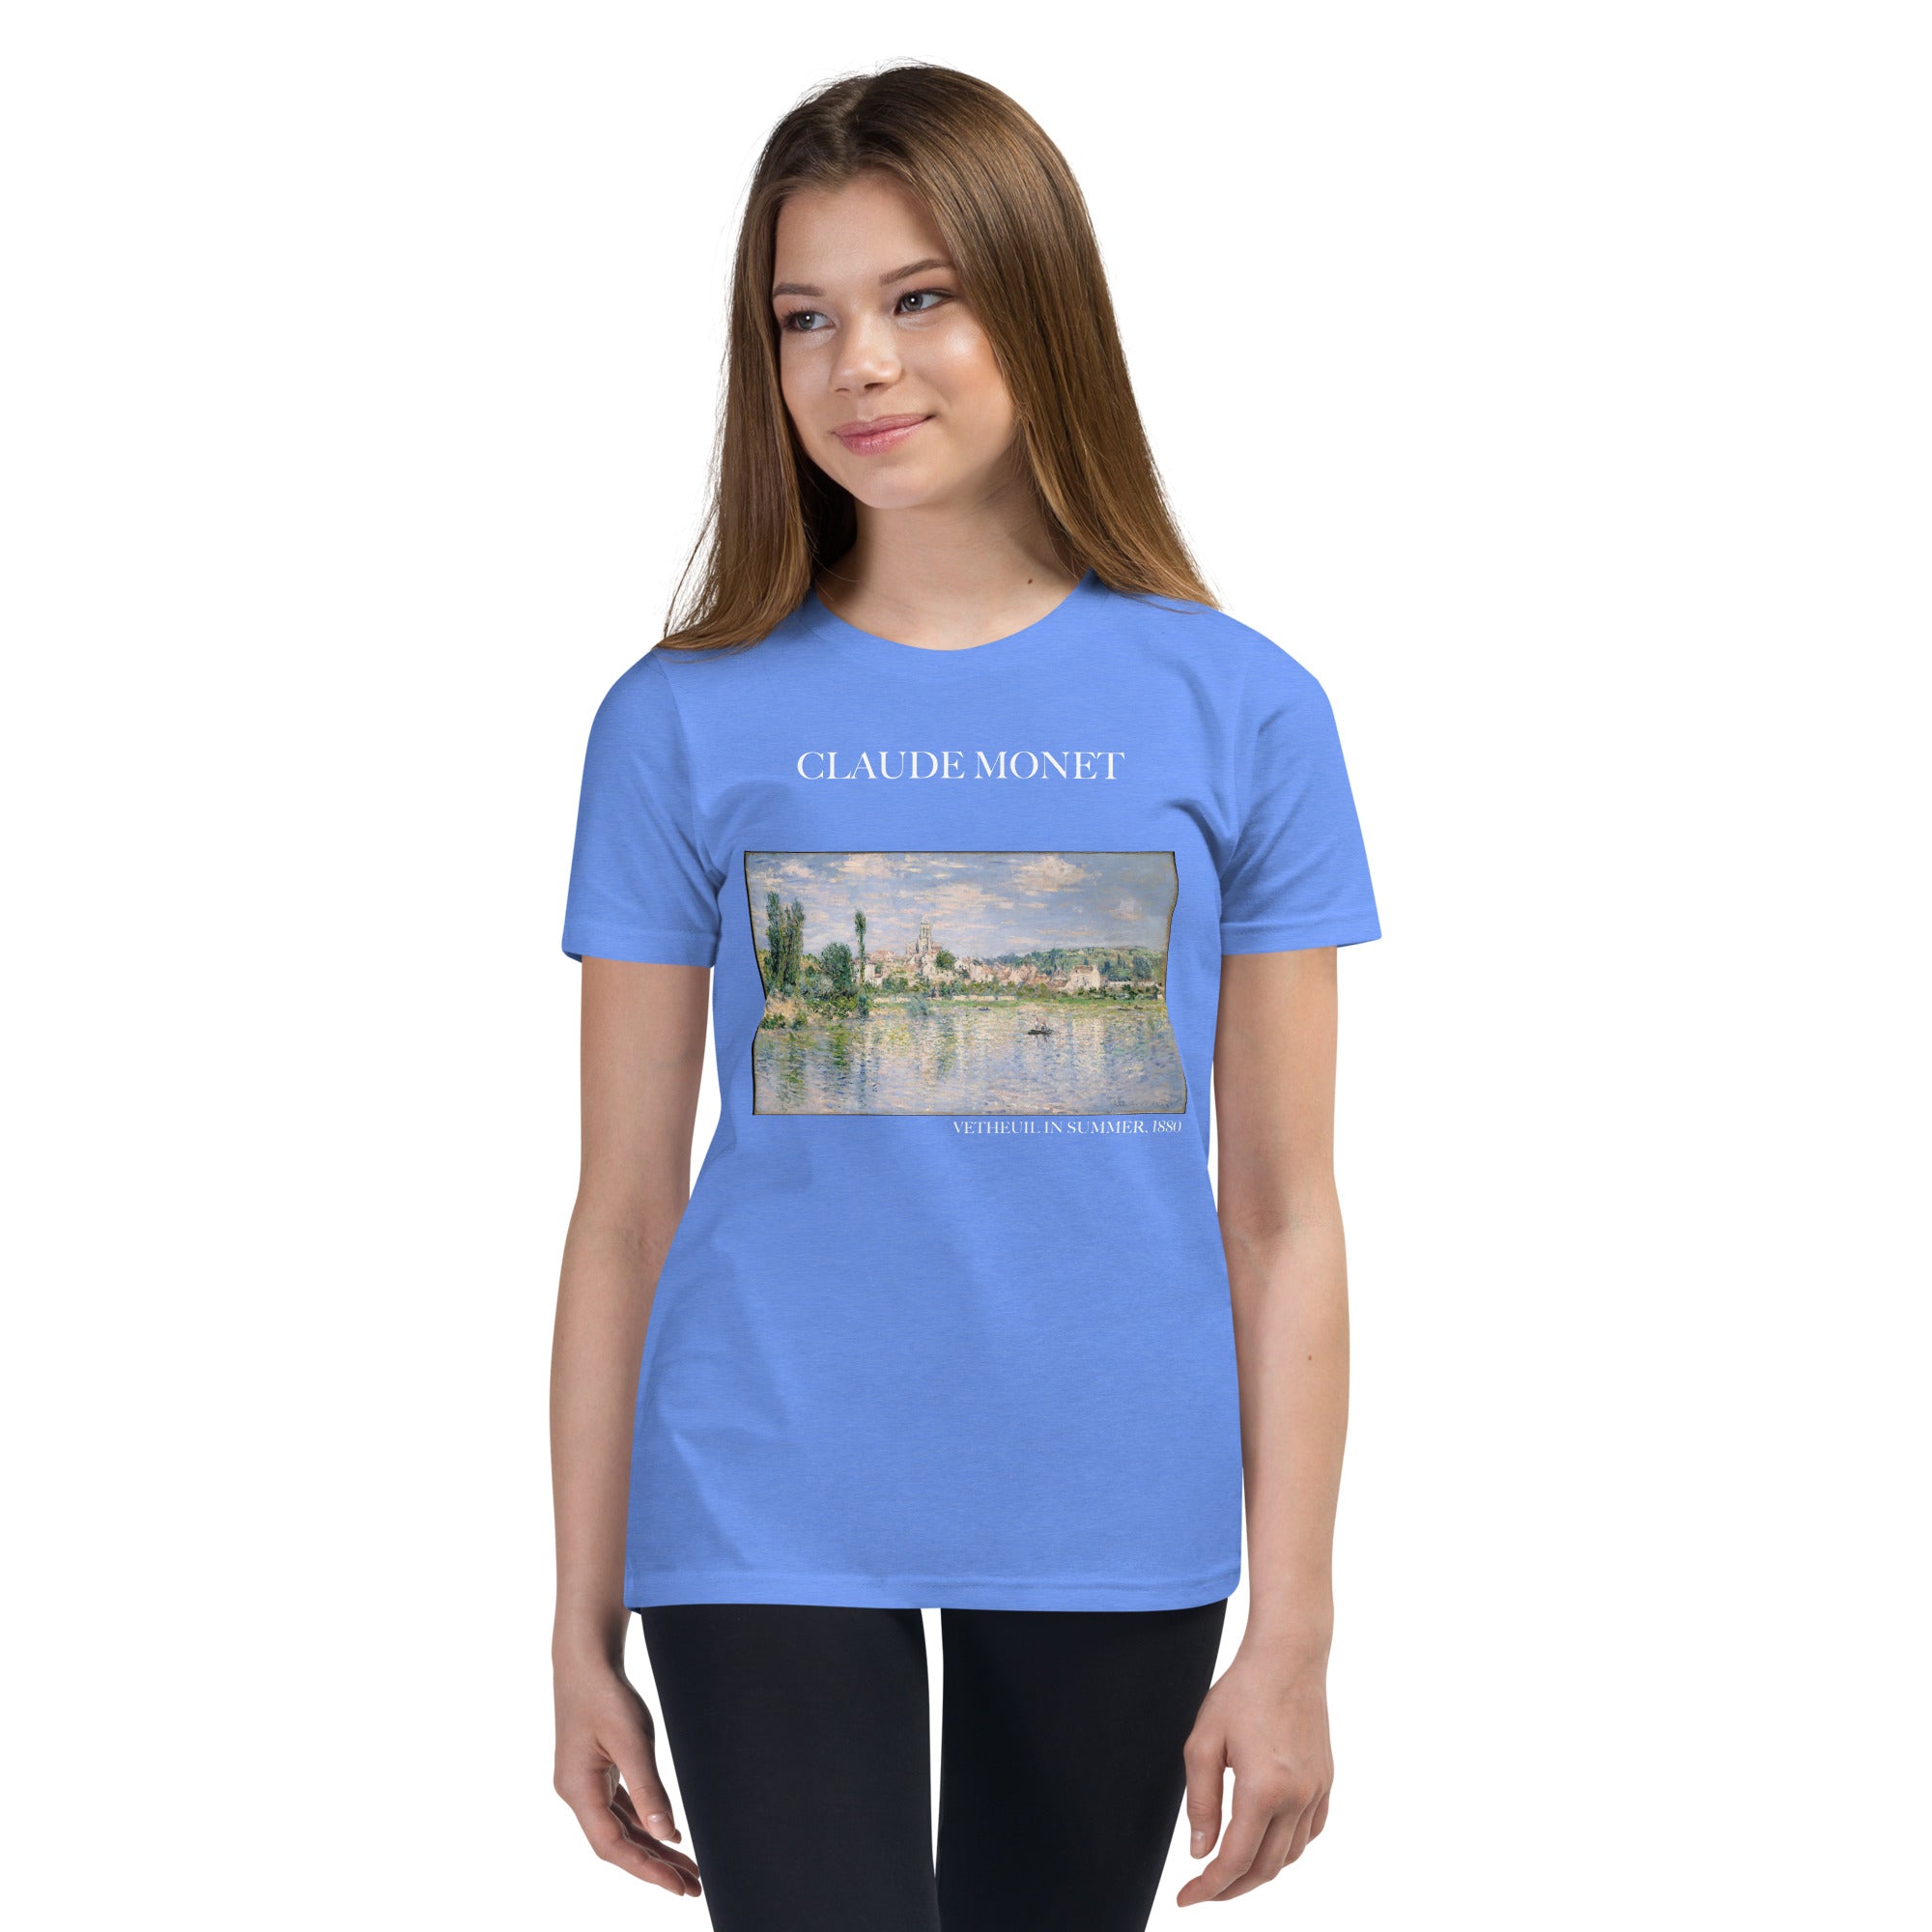 Claude Monet „Vetheuil im Sommer“, berühmtes Gemälde, kurzärmeliges T-Shirt | Premium-Kunst-T-Shirt für Jugendliche